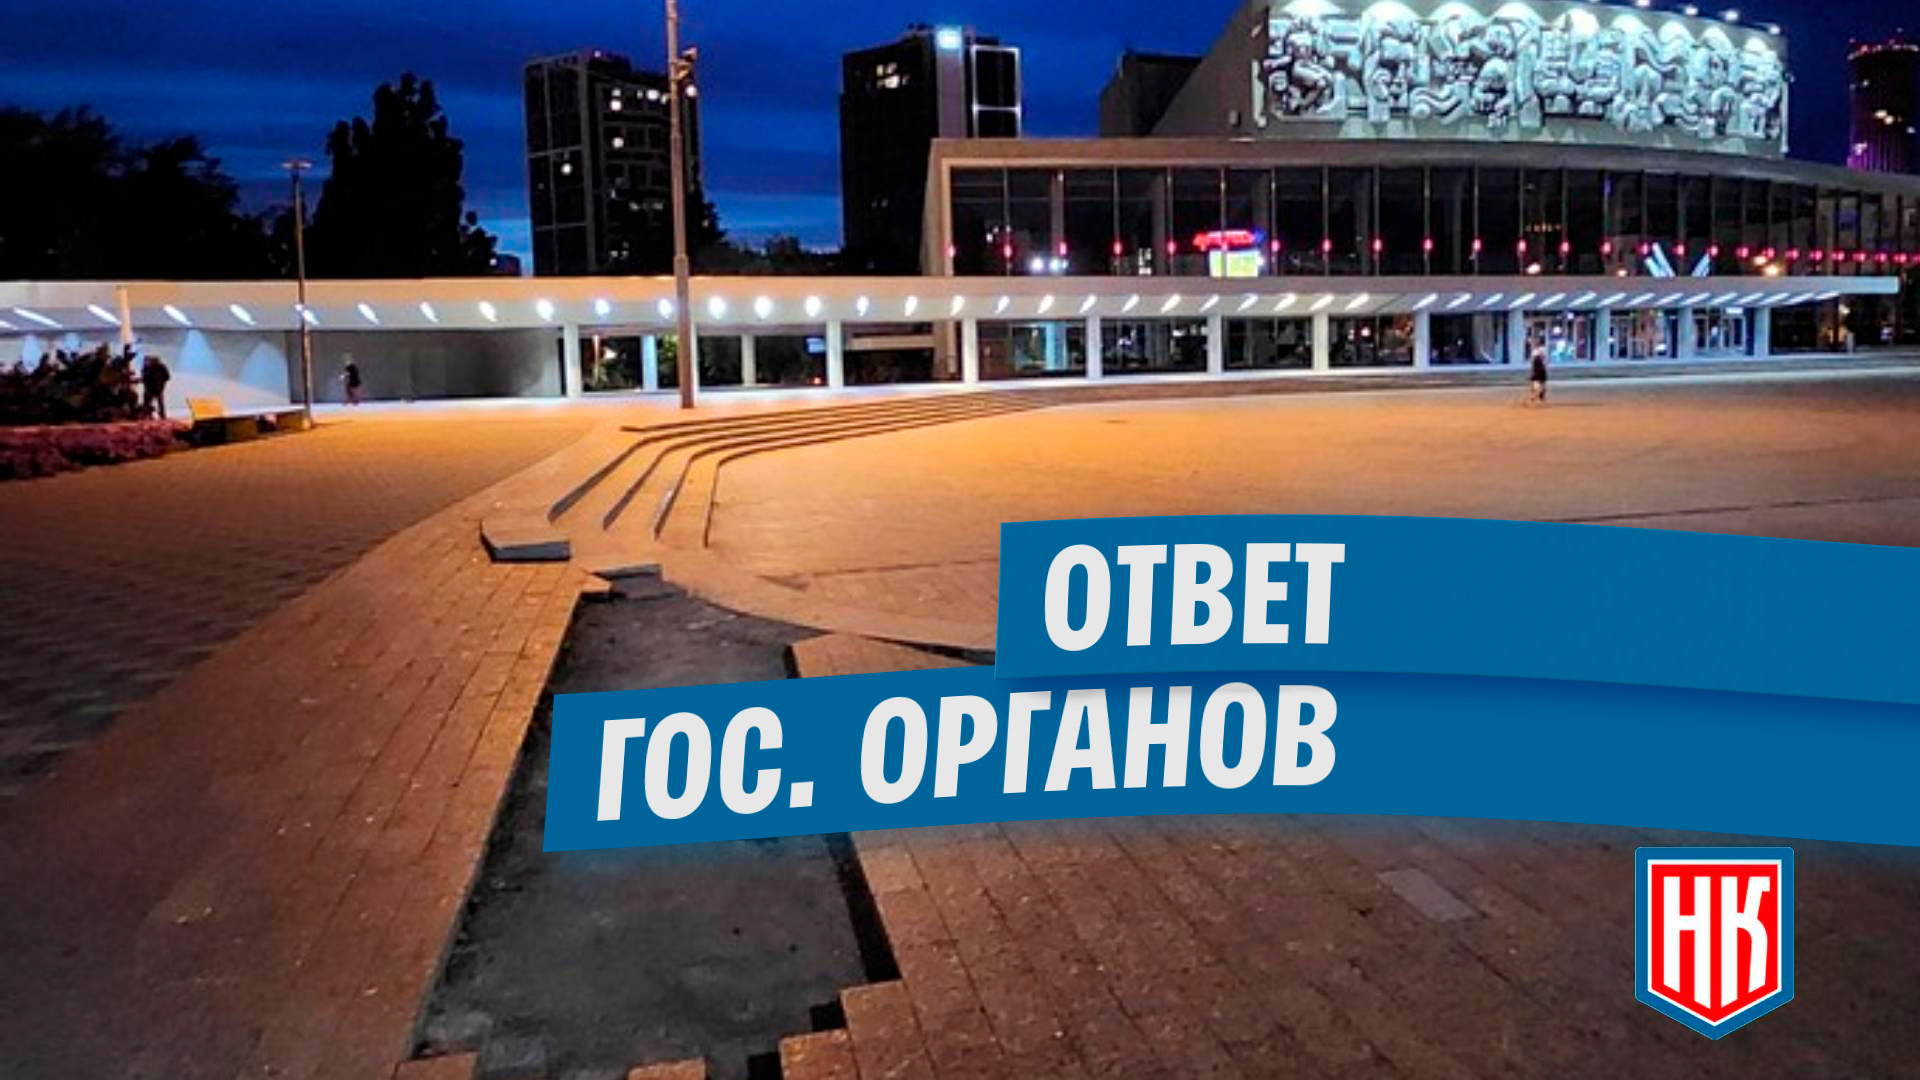 Ответ по вопросу неположенной плитки у Дворца Молодежи в Екатеринбурге